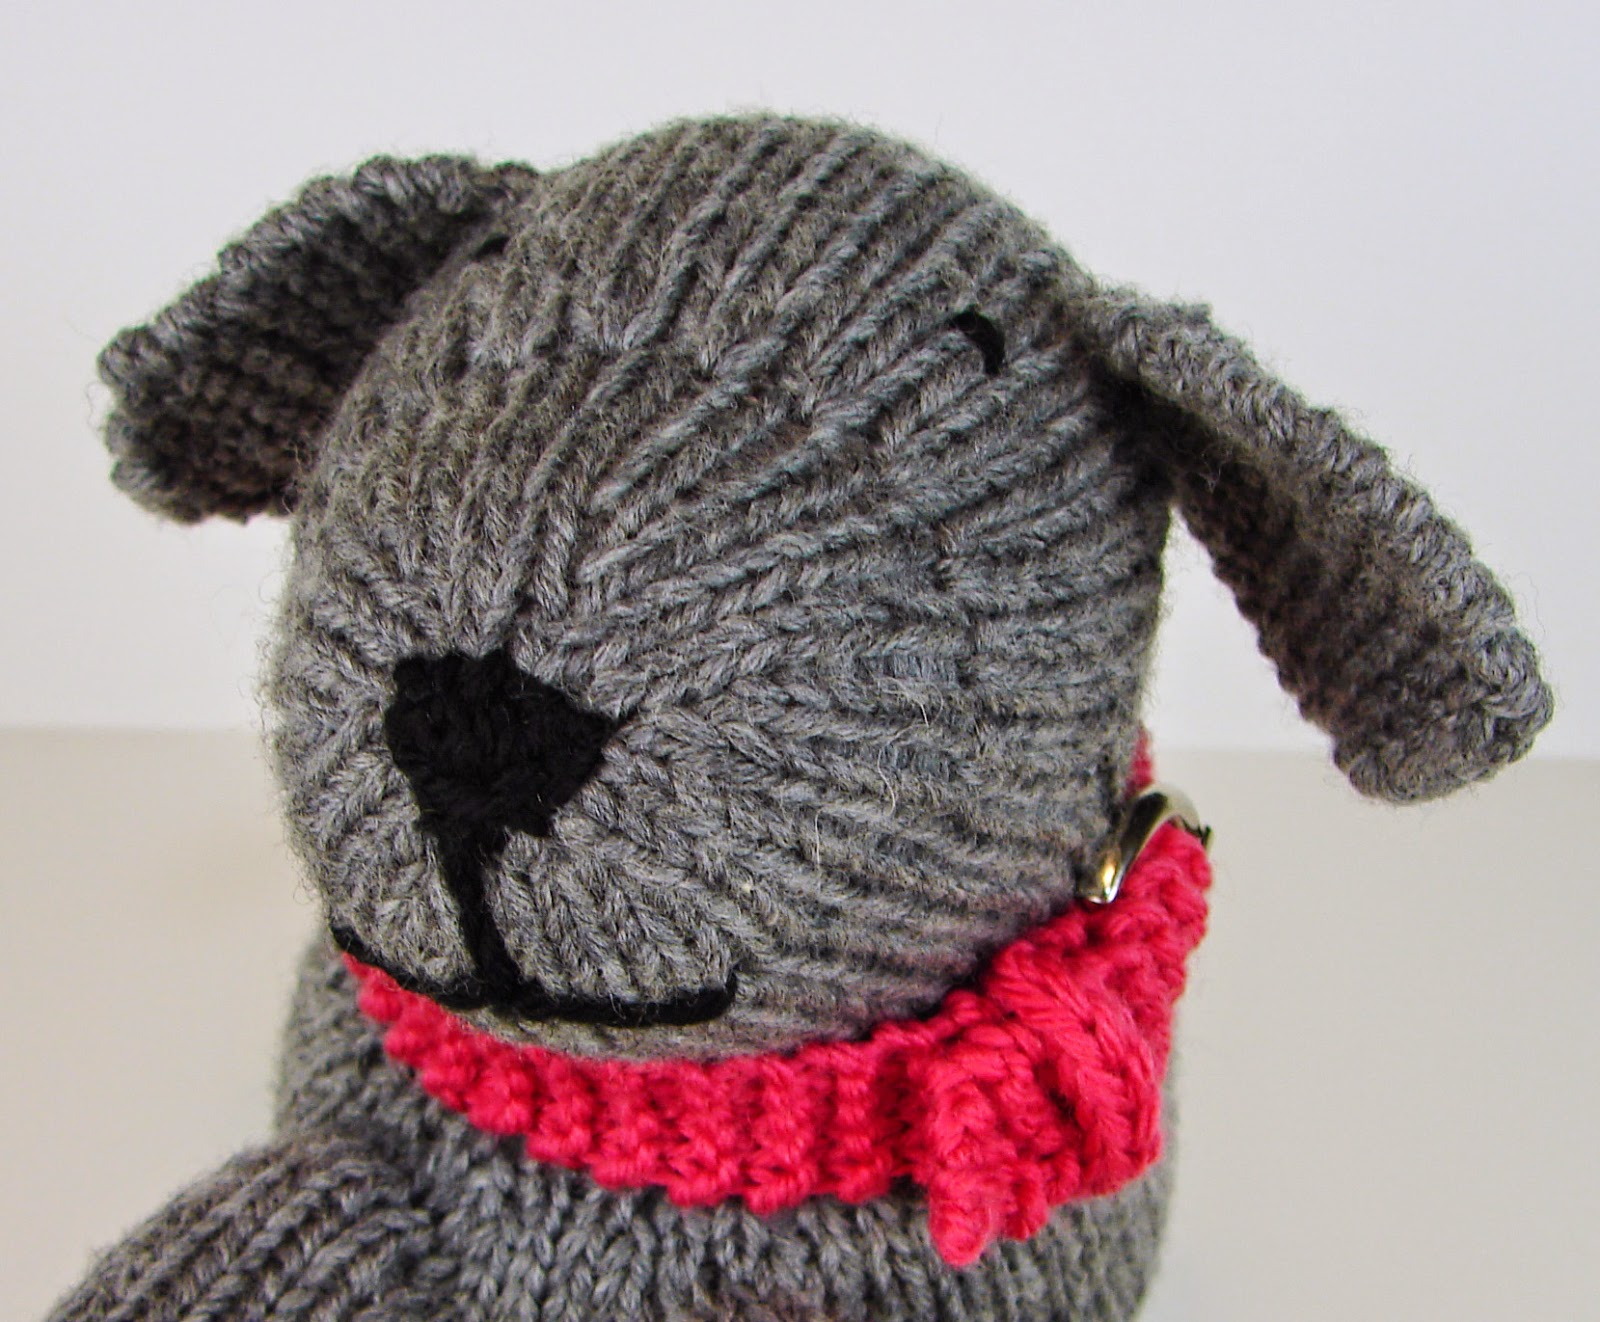 knit dog toy stuffed pattern